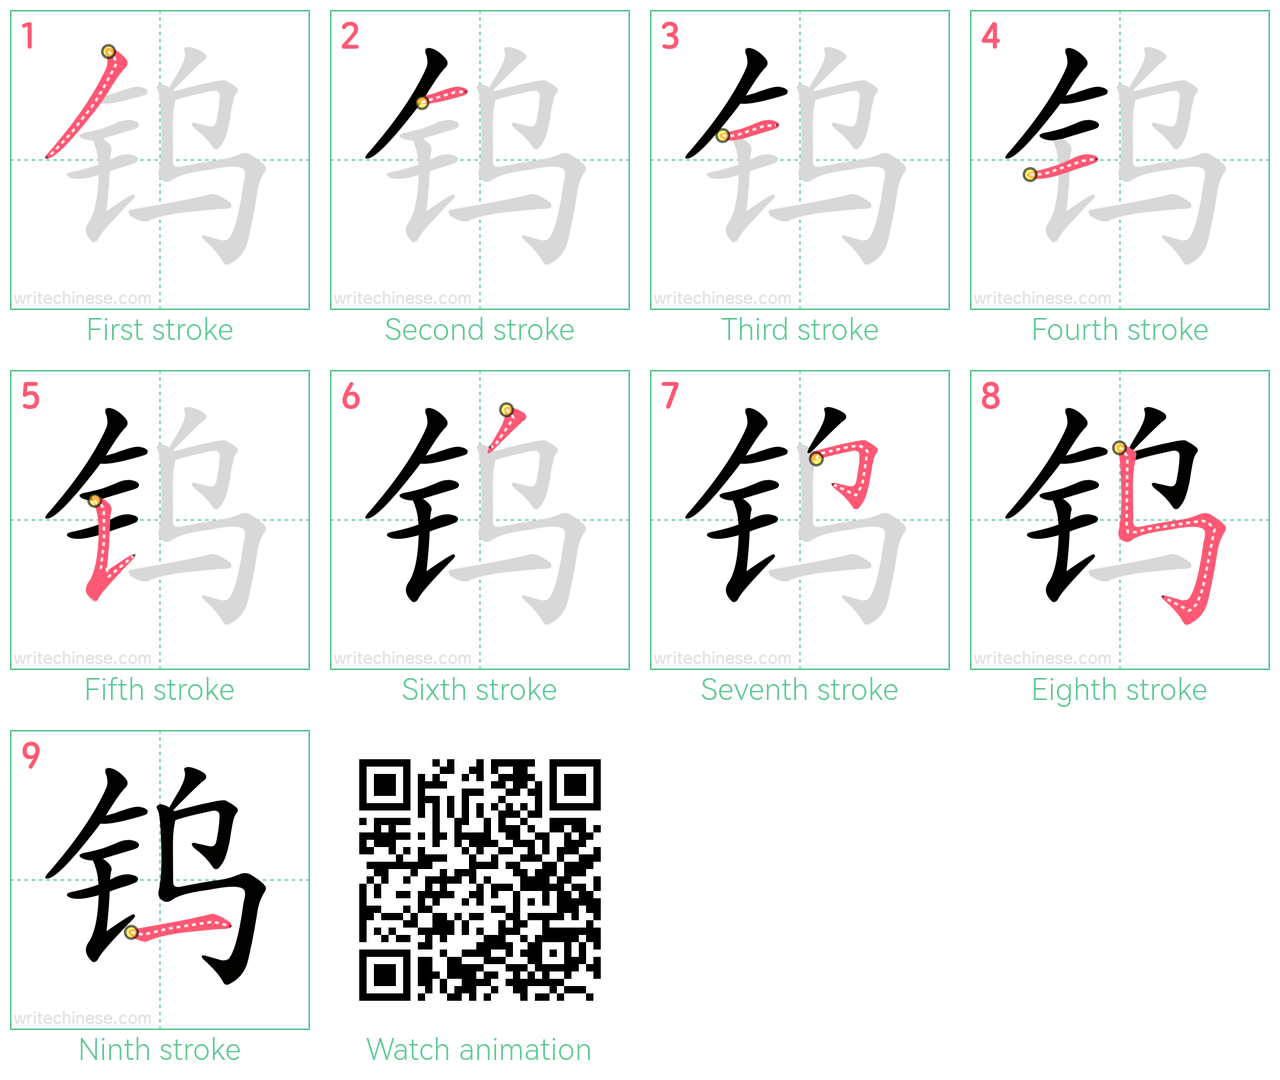 钨 step-by-step stroke order diagrams